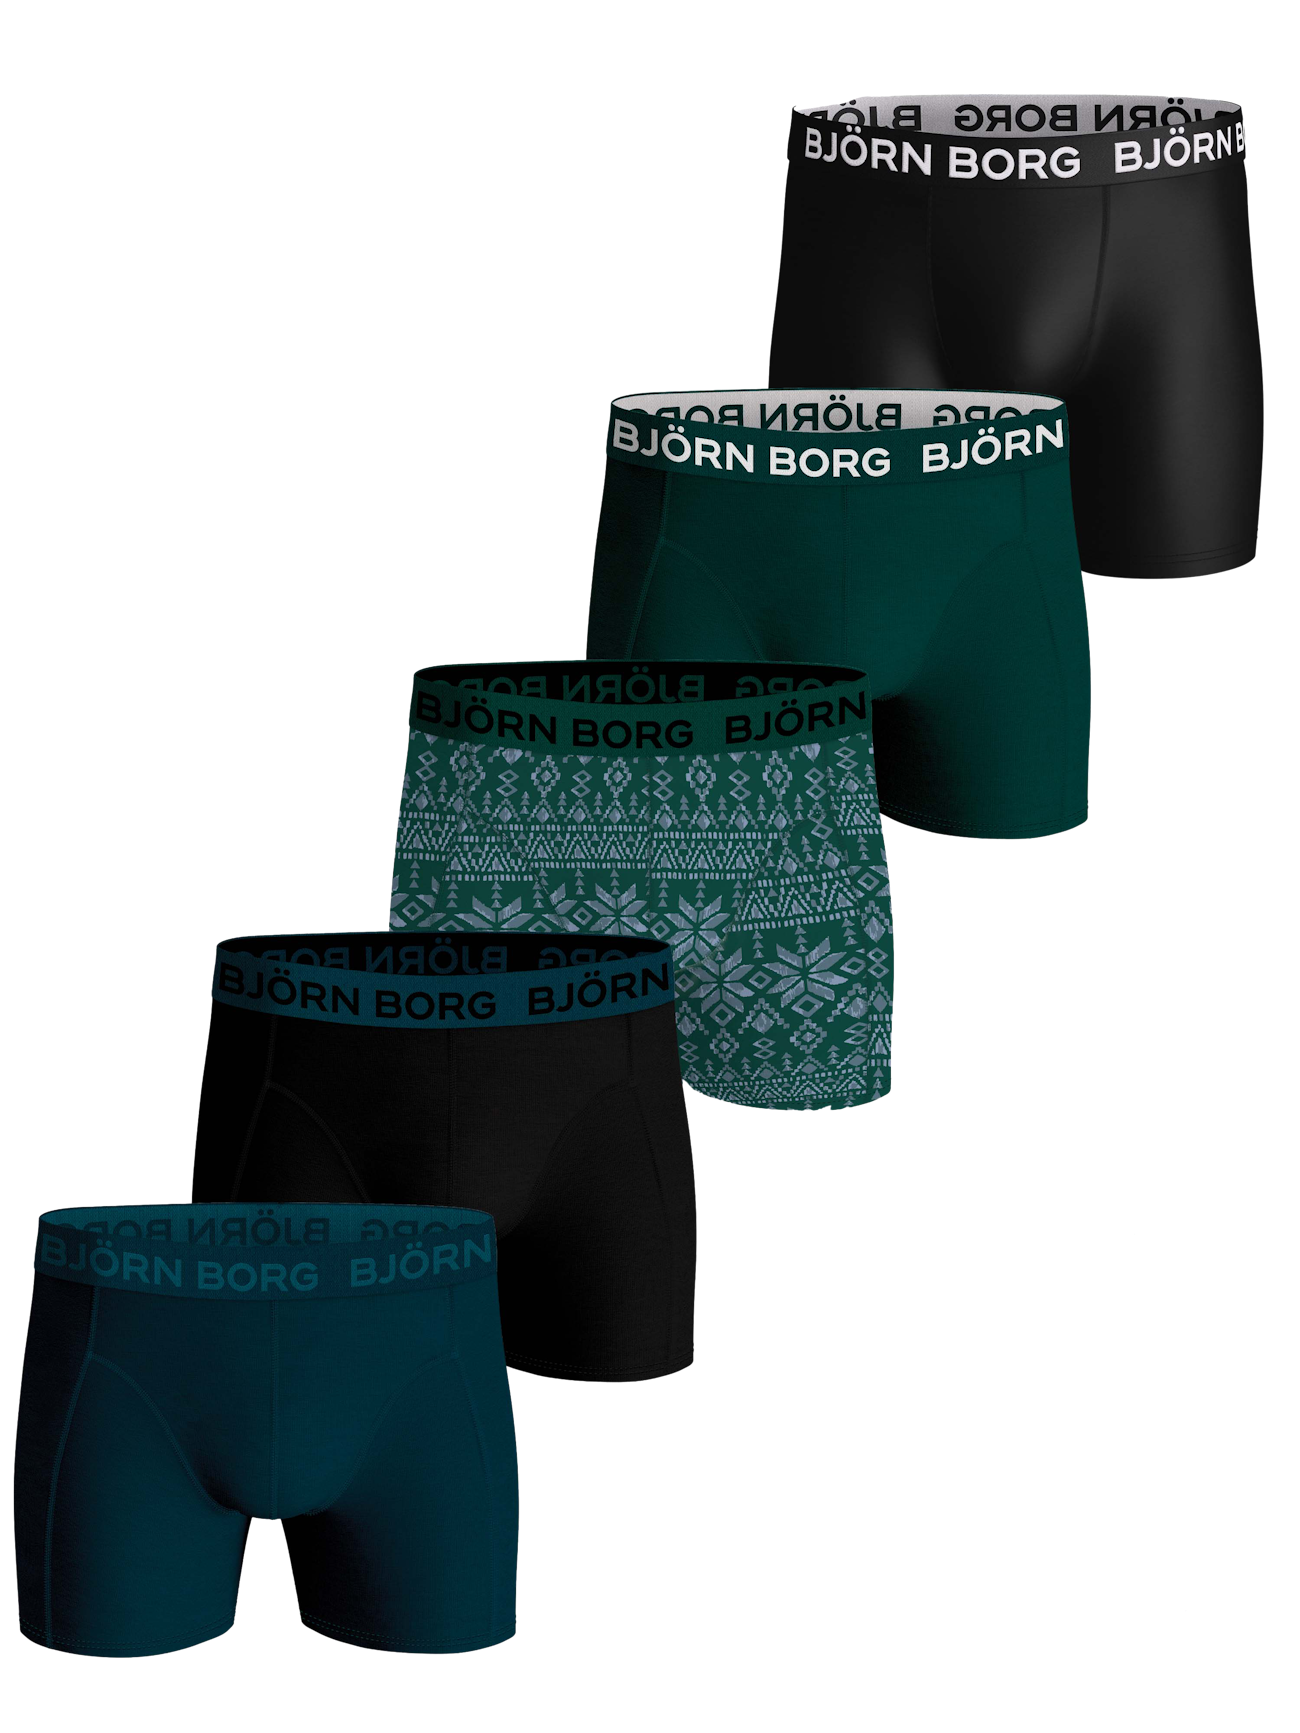 Maillot de Bain Homme Boxers Transparent Respirant Shorts de Bain